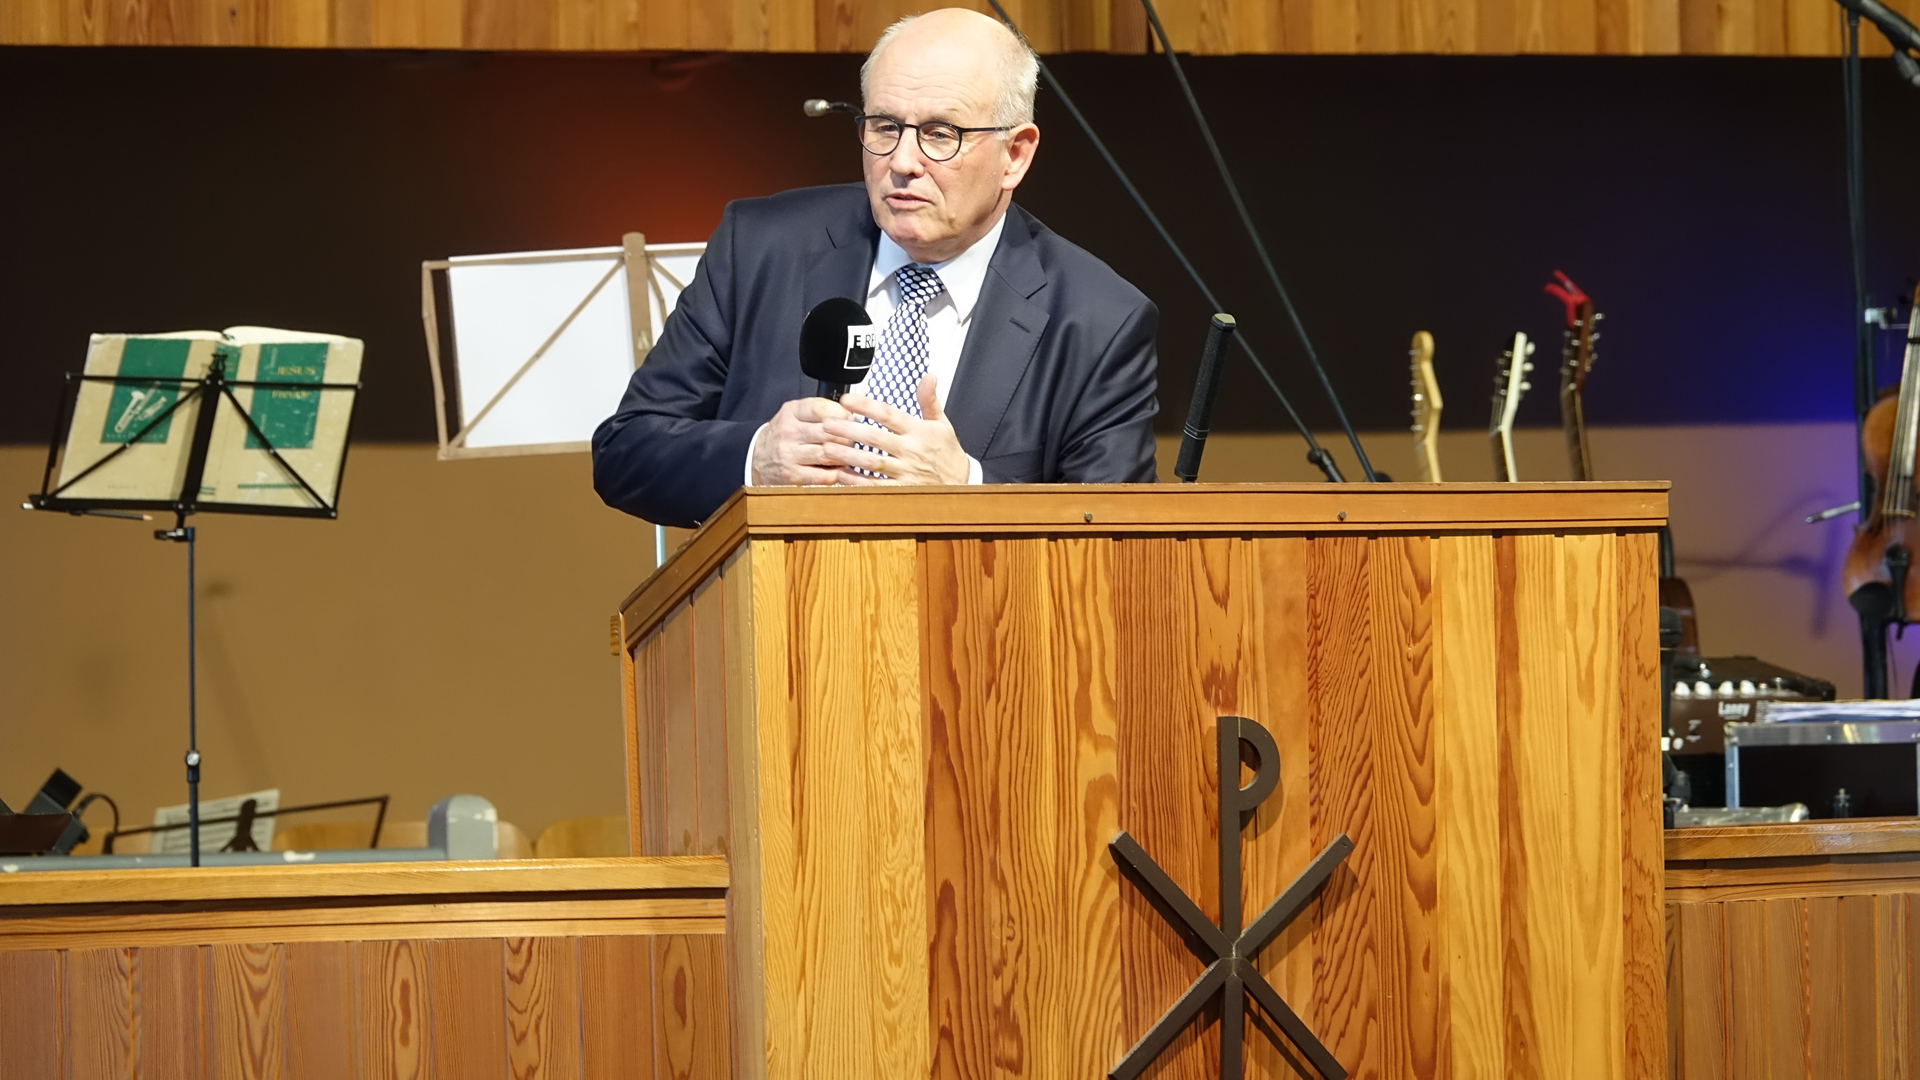 Am abschließenden Sonntag sprach Unionsfraktionsvorsitzender Volker Kauder in der Konferenzhalle über weltweit verfolgte Christen